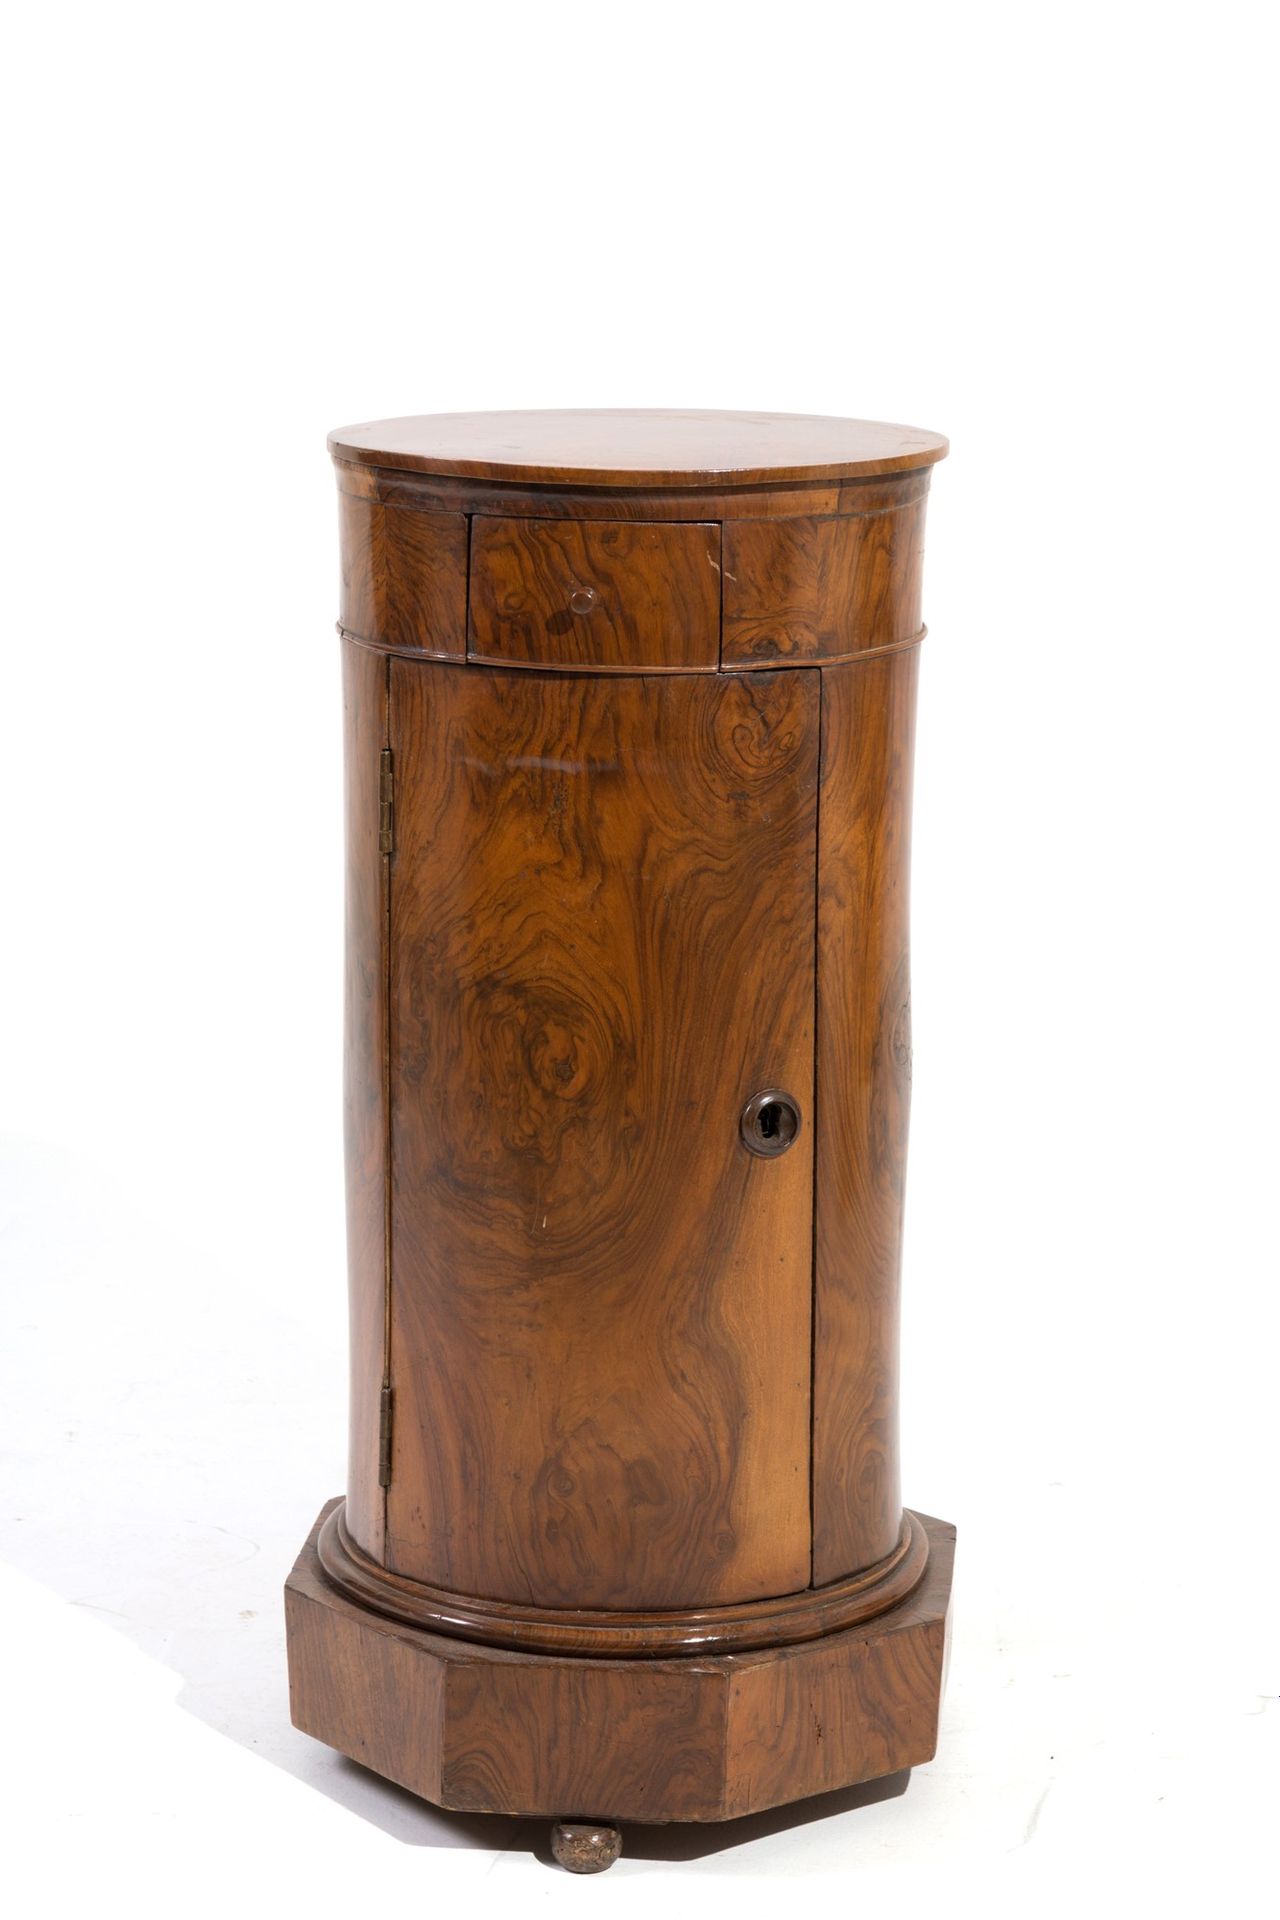 Cylinder bedside table 胡桃木圆柱形床头柜。19世纪。 高80厘米左右。